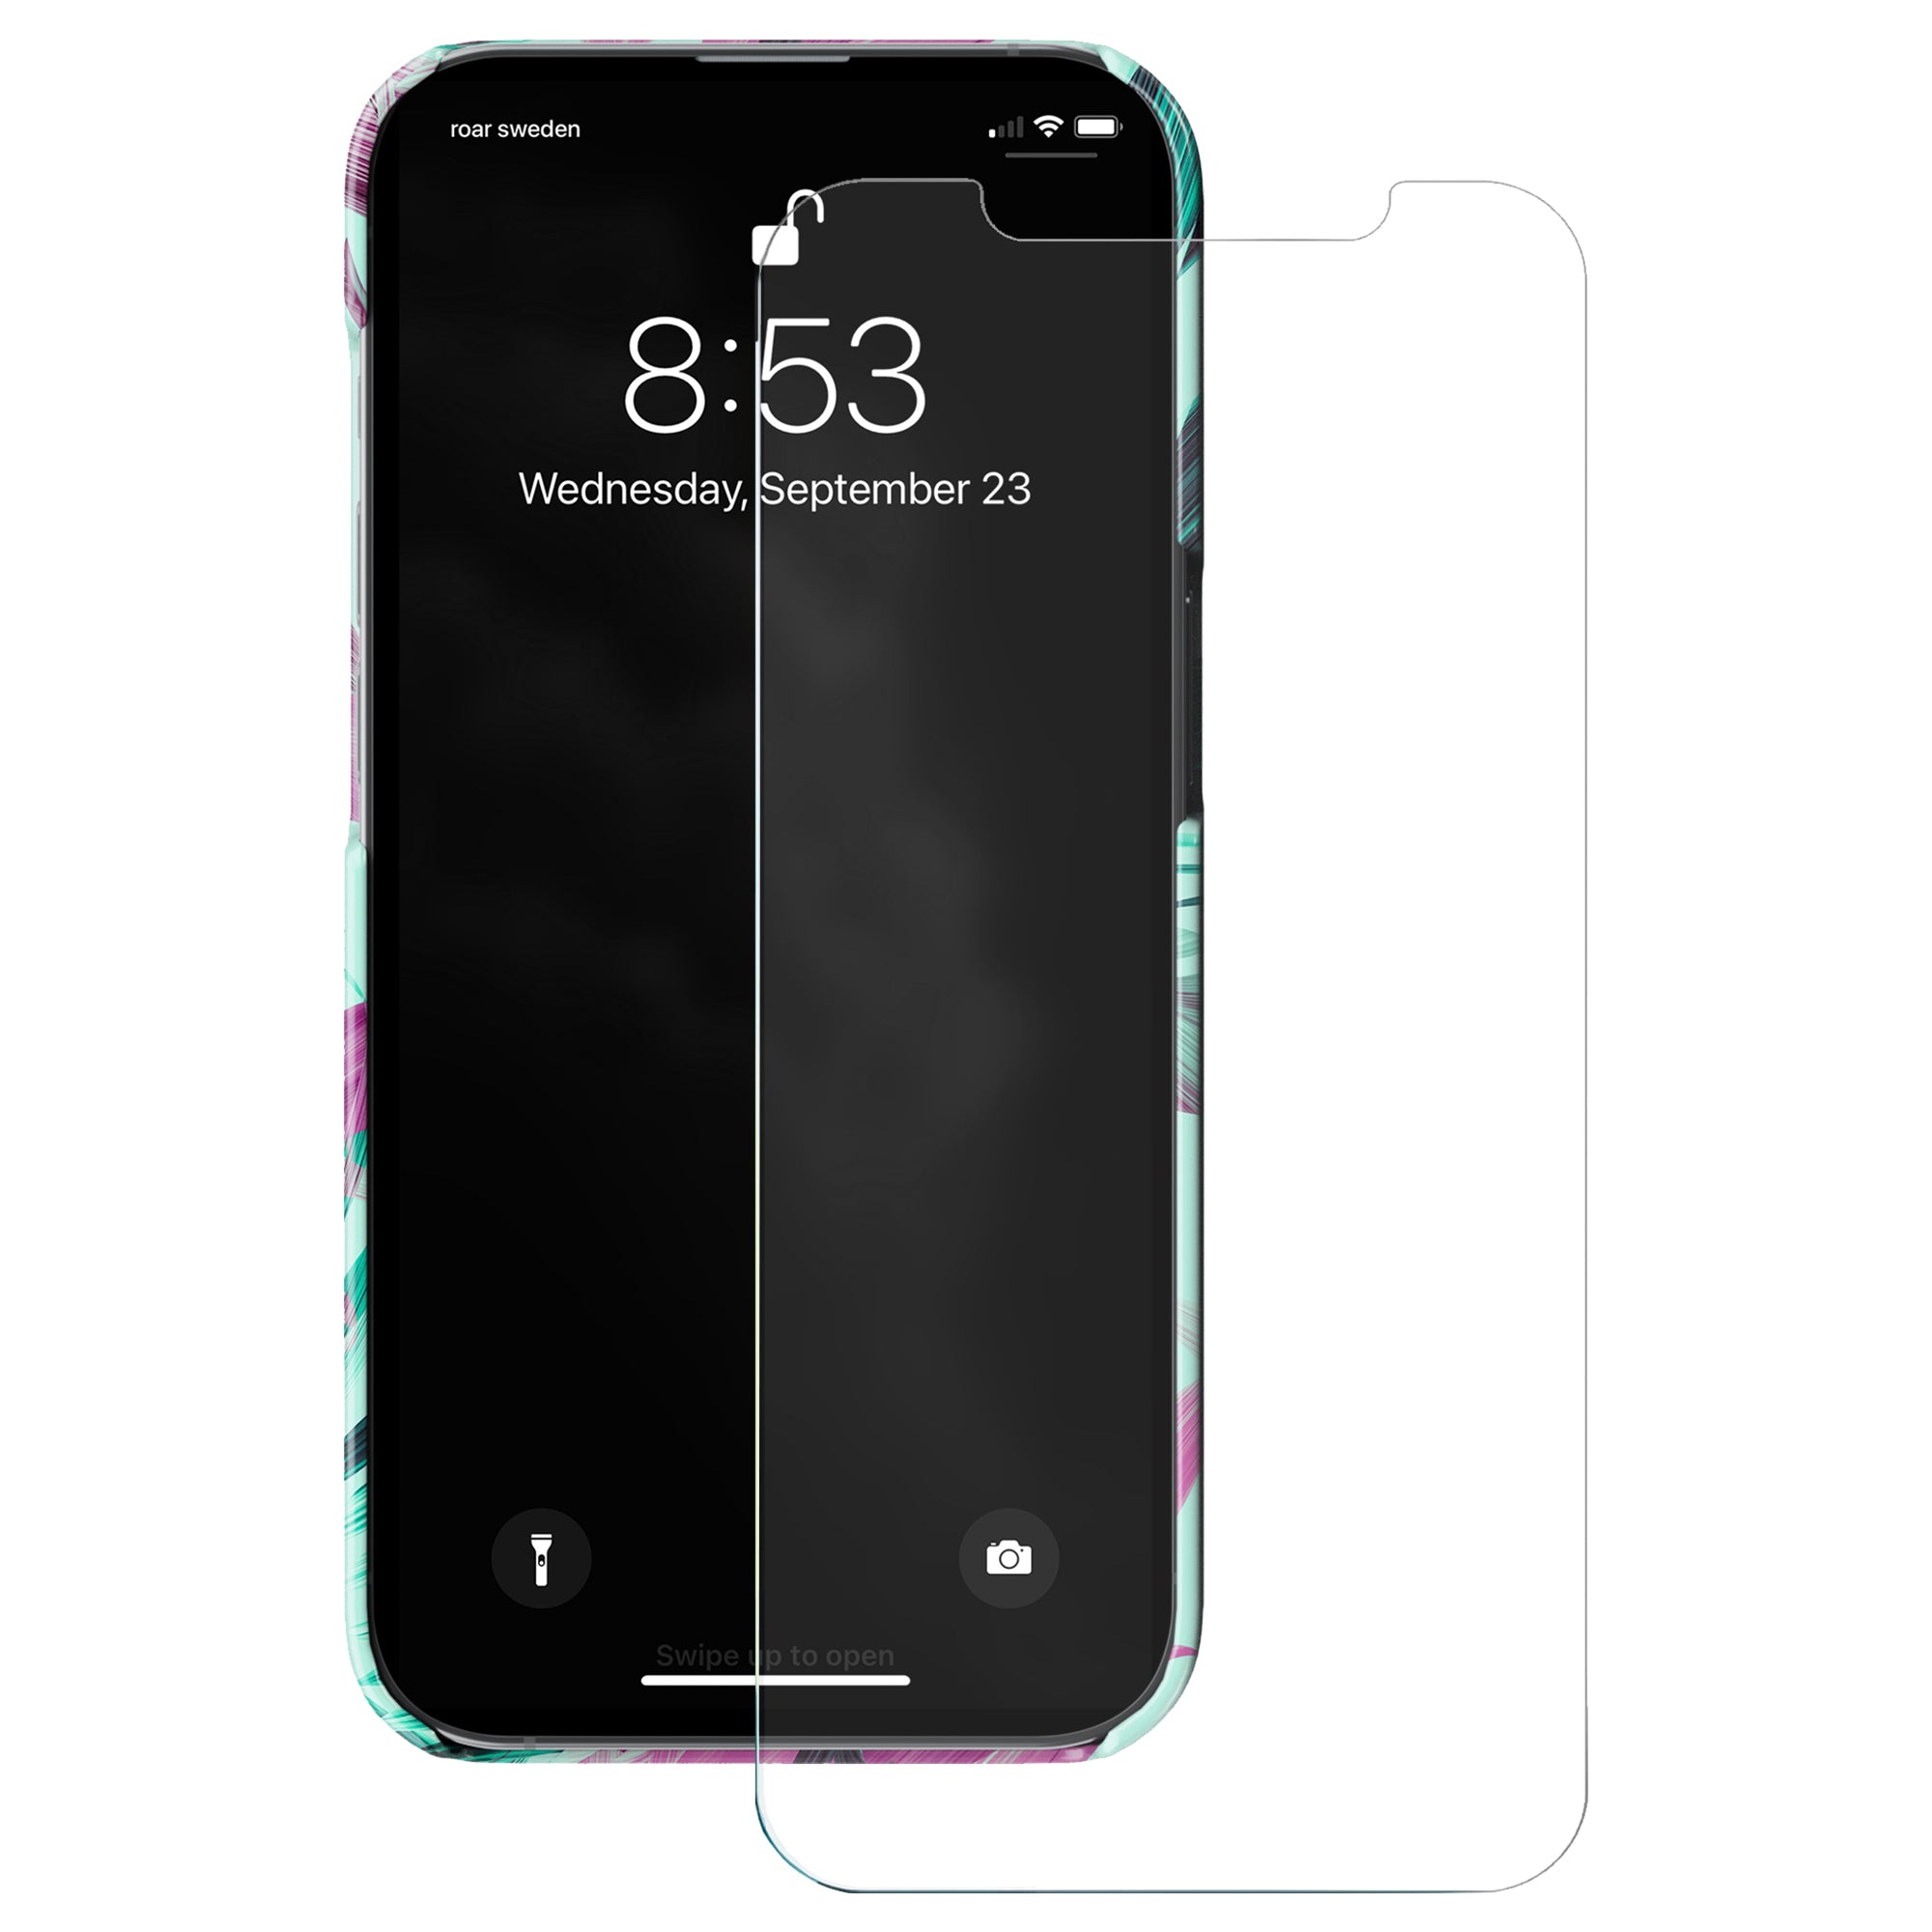 Beskrivning: Mobilskal för iPhone XS Max med härdat glas och extra skydd.
Product Name: Skärmskydd - Premium Glas